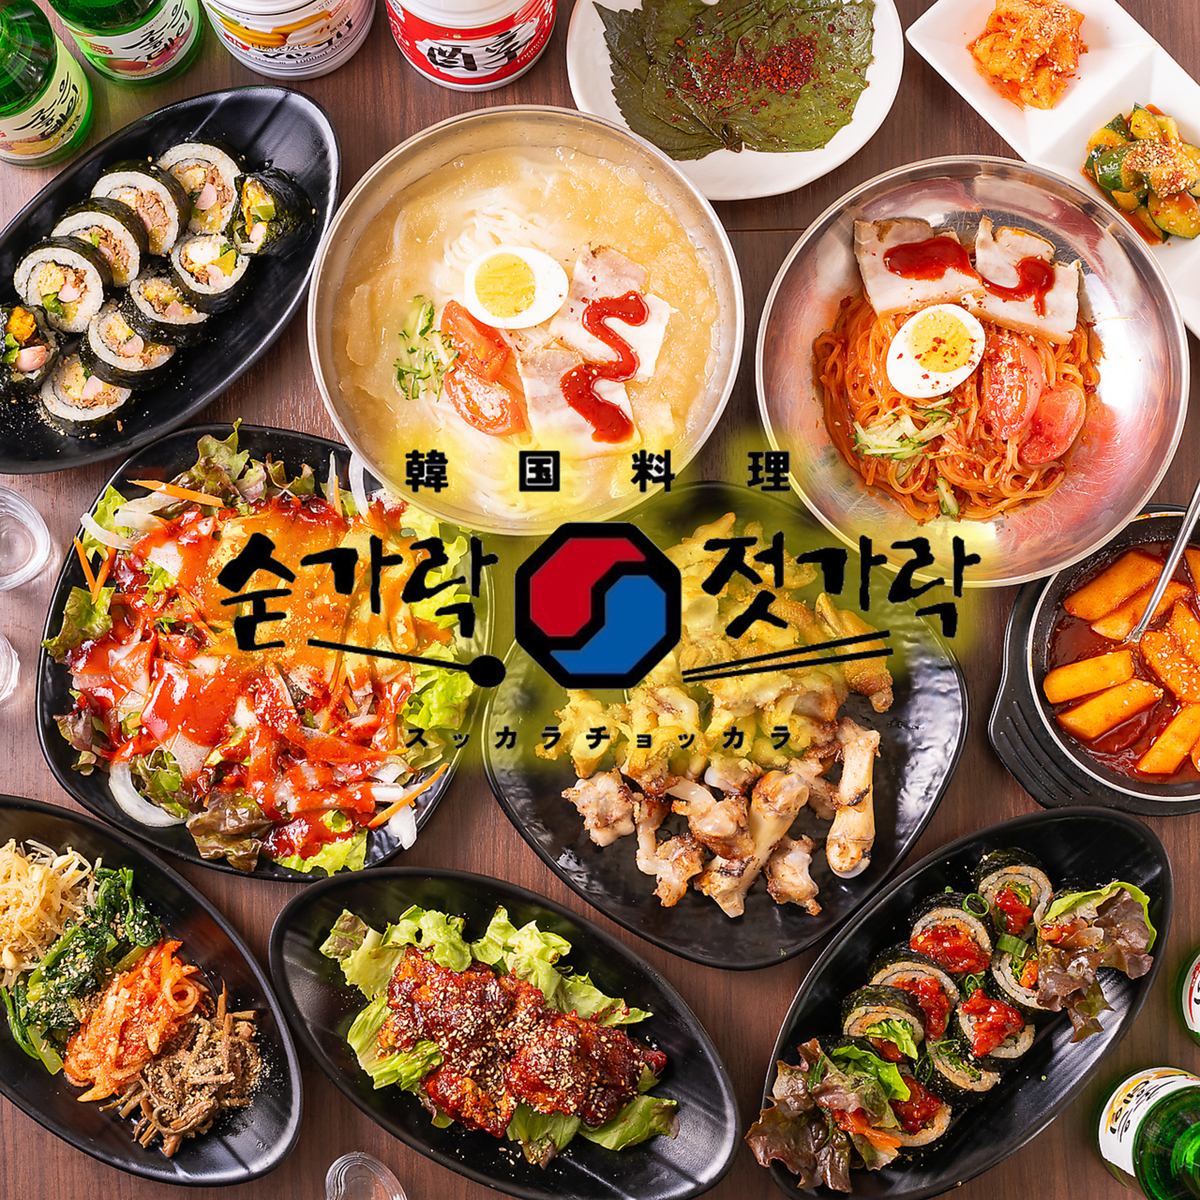 請在韓國居酒屋享受正宗的韓國料理和各種酒類，度過愉快的時光。